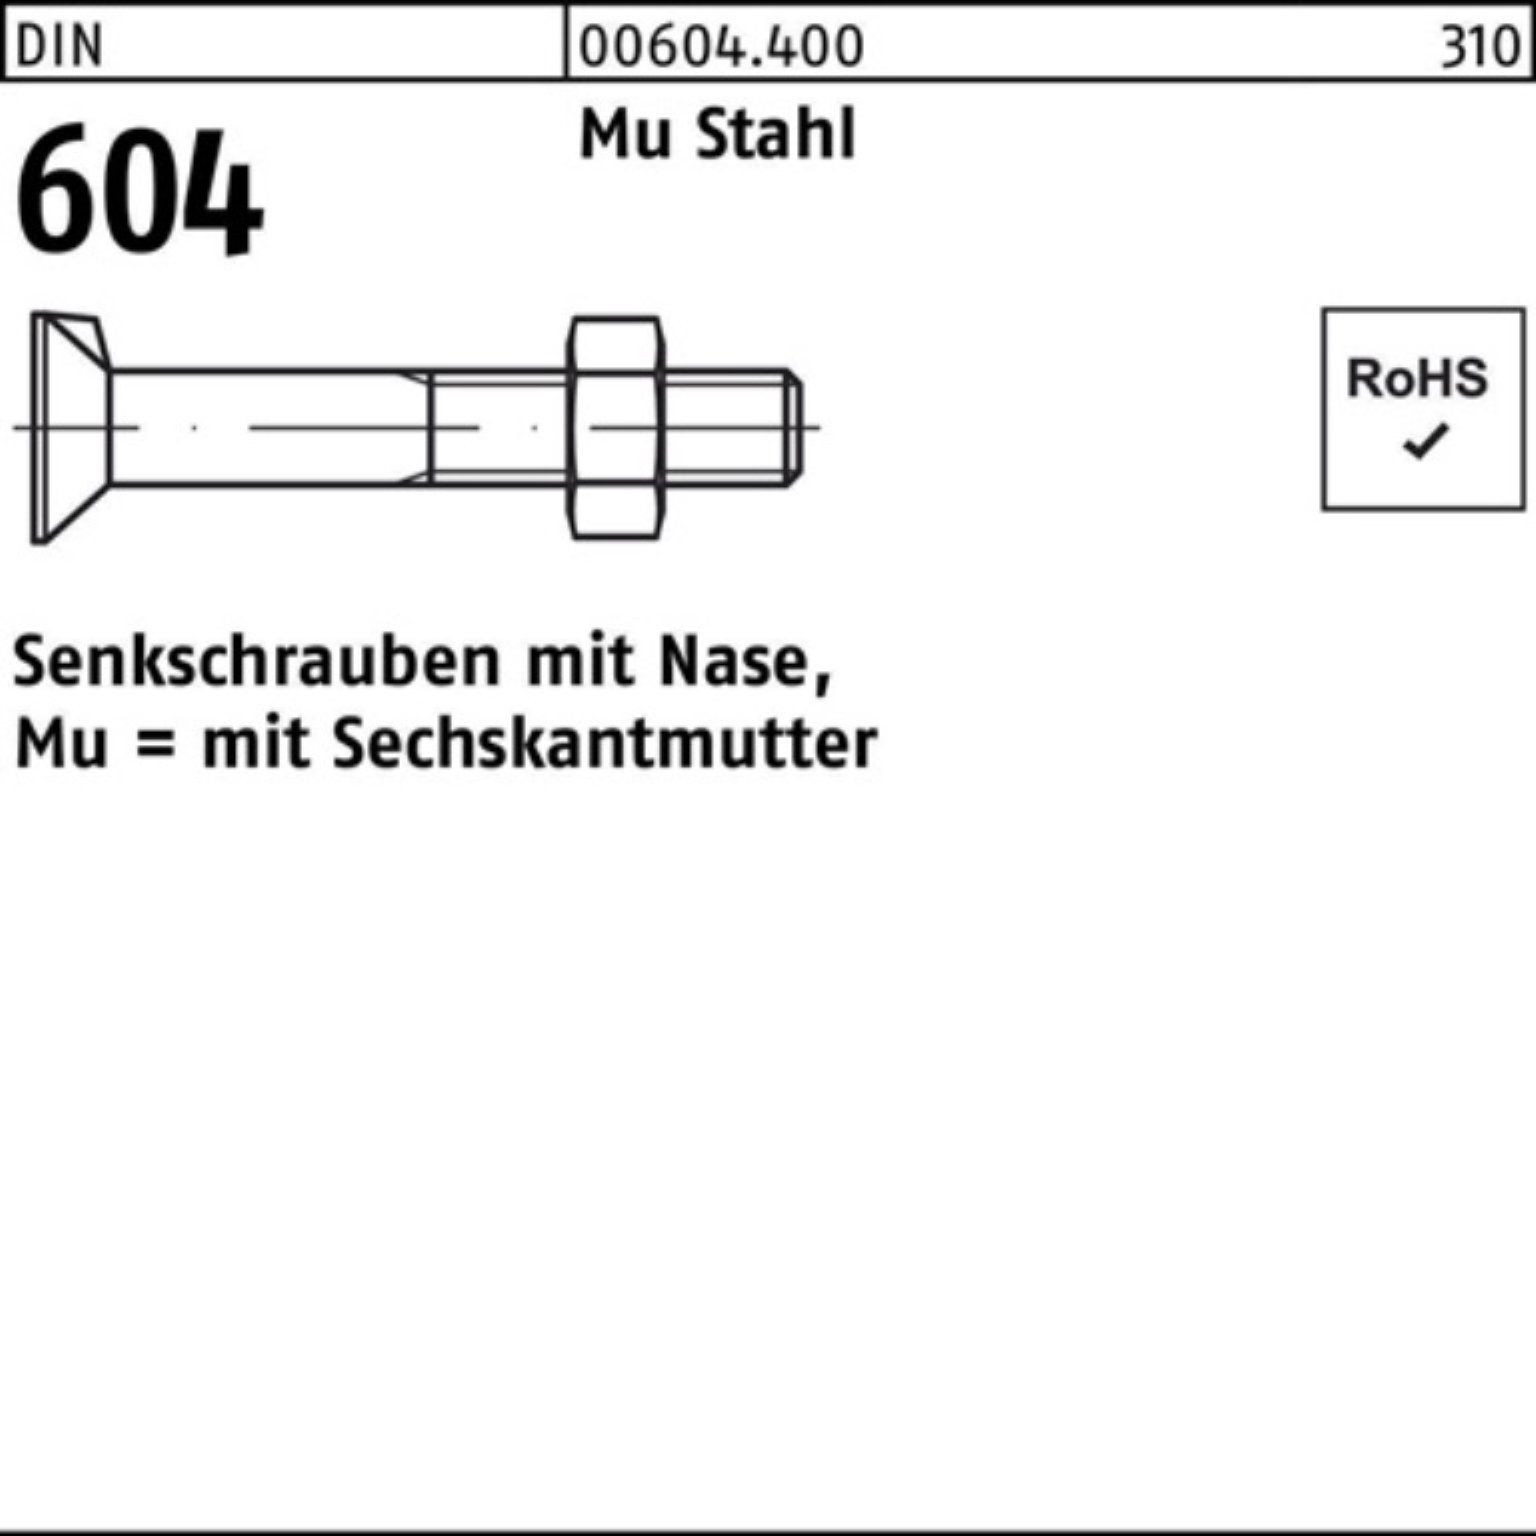 Reyher Senkschraube 100er Pack Senkschraube DIN 604 Nase/6-ktmutter M16x 130 Mu Stahl 4.6